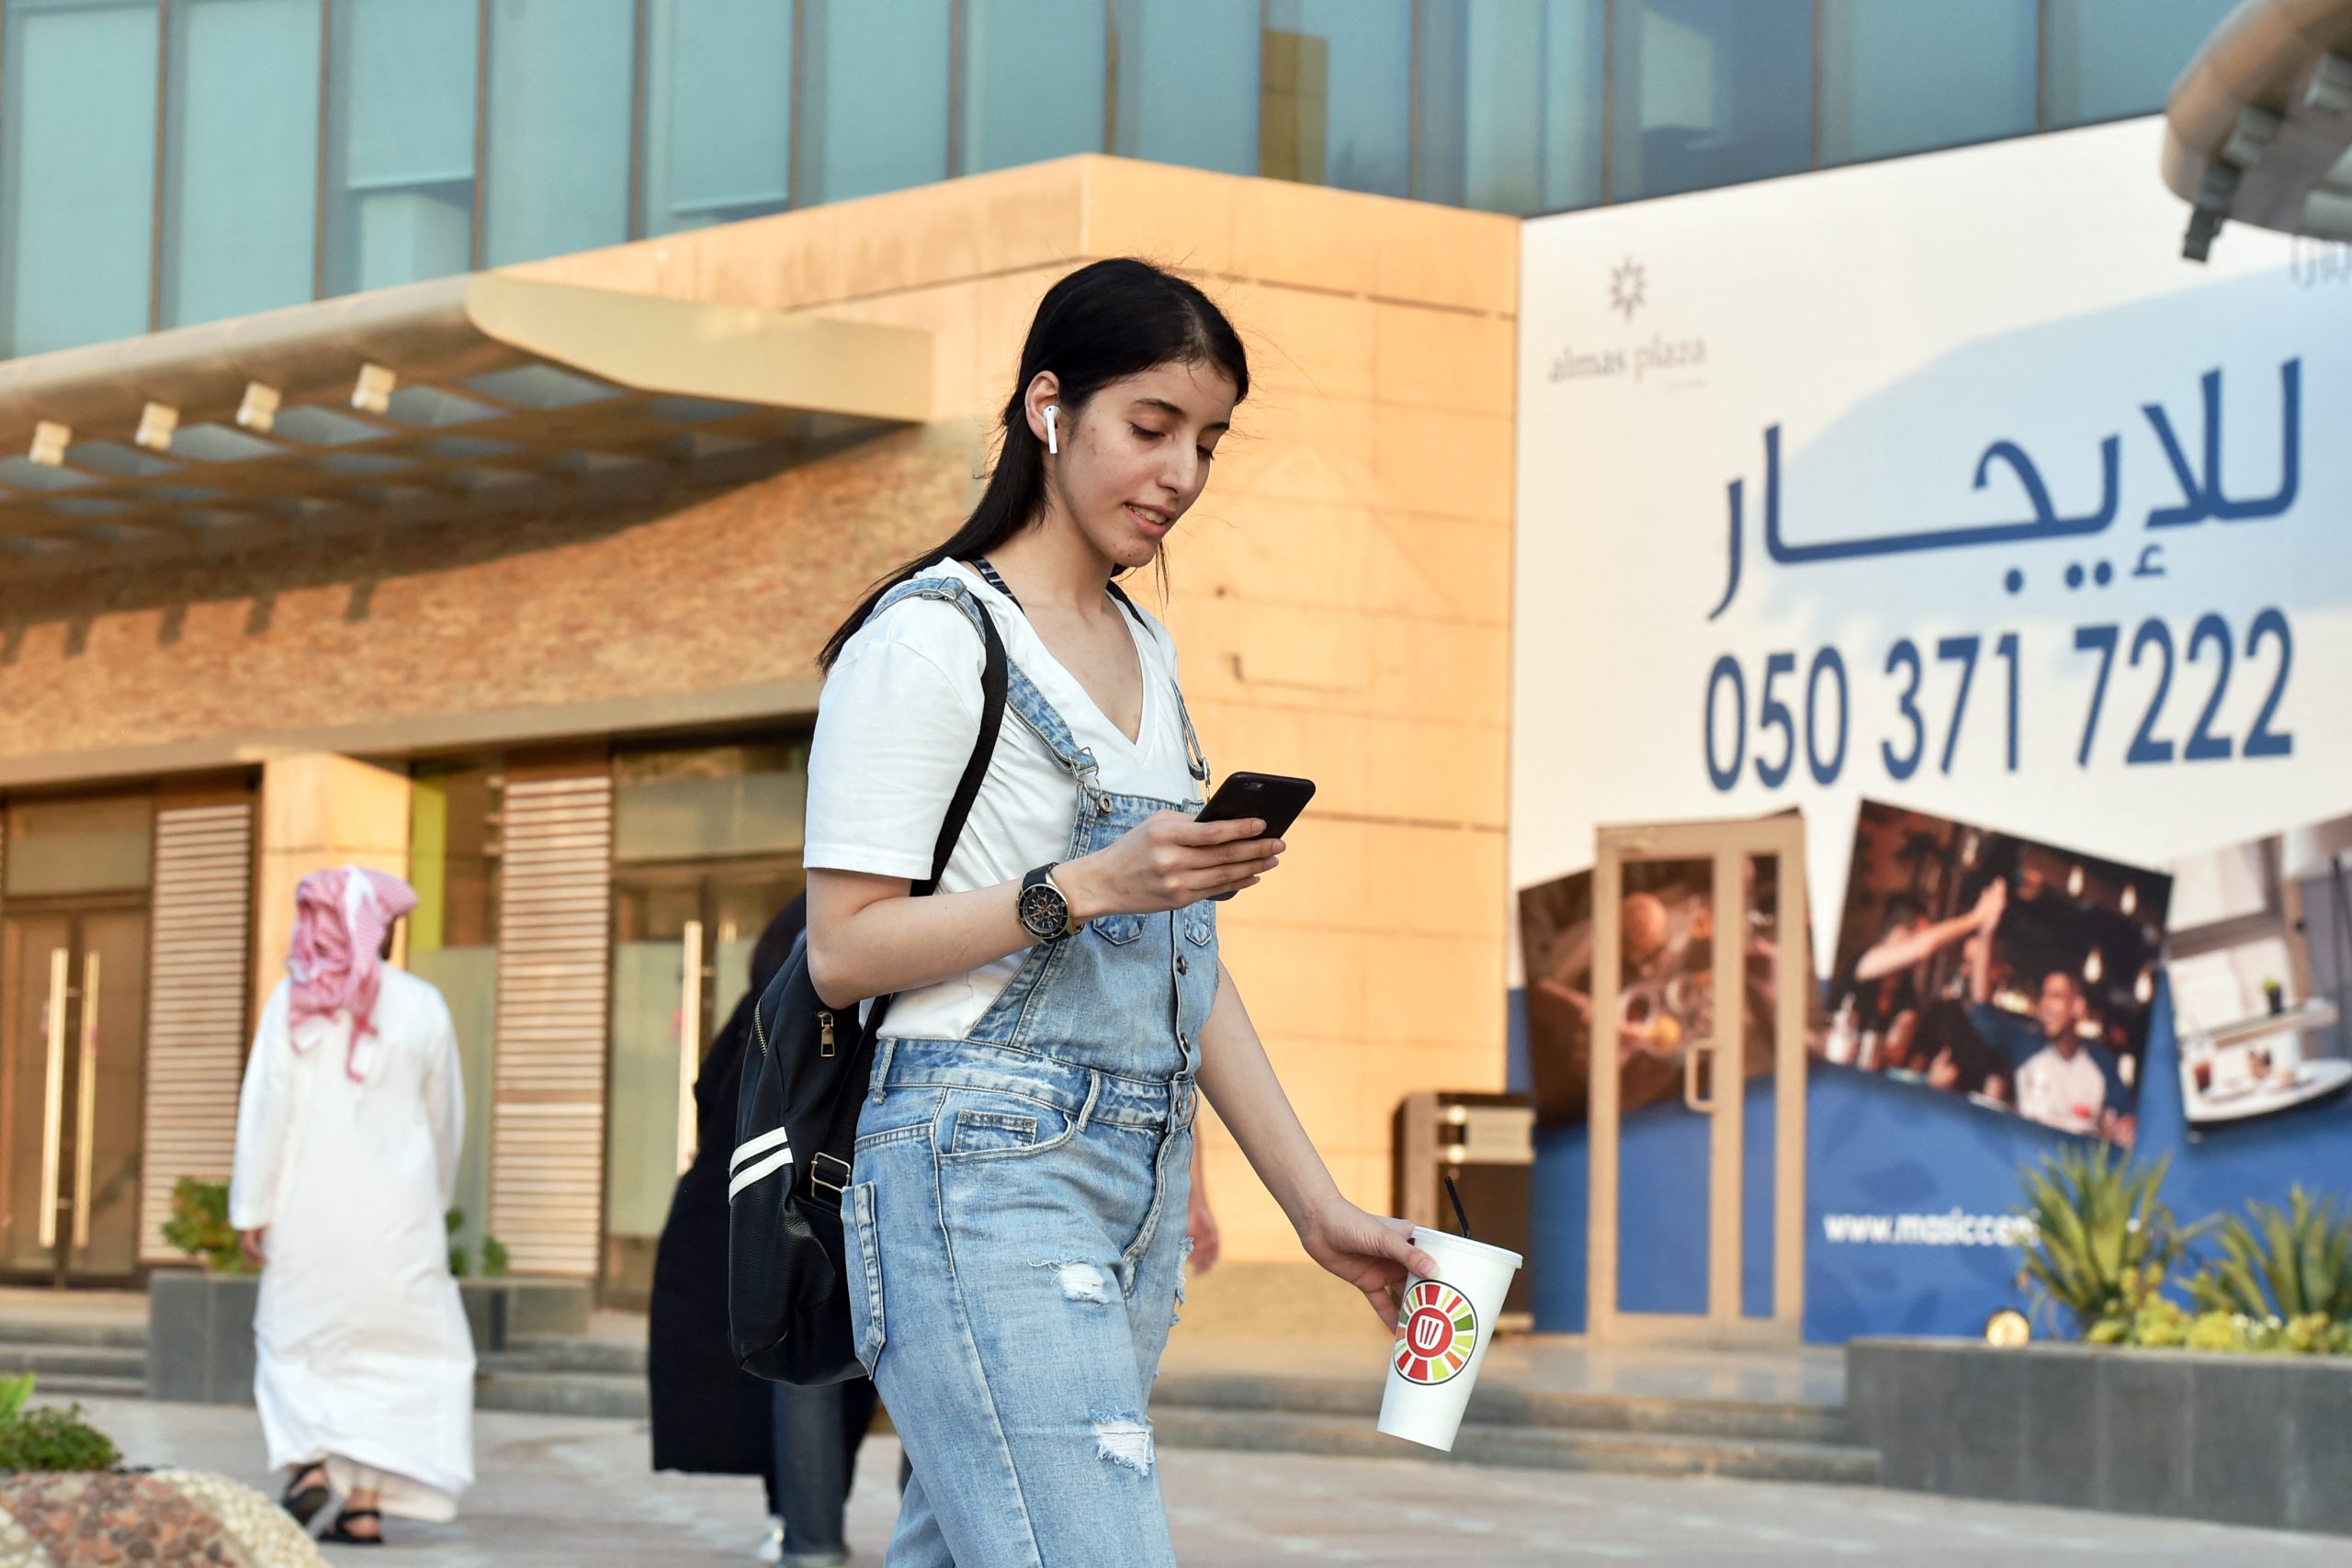 Manahel al-Otaibi walks the streets of Riyadh in western clothing in 2019